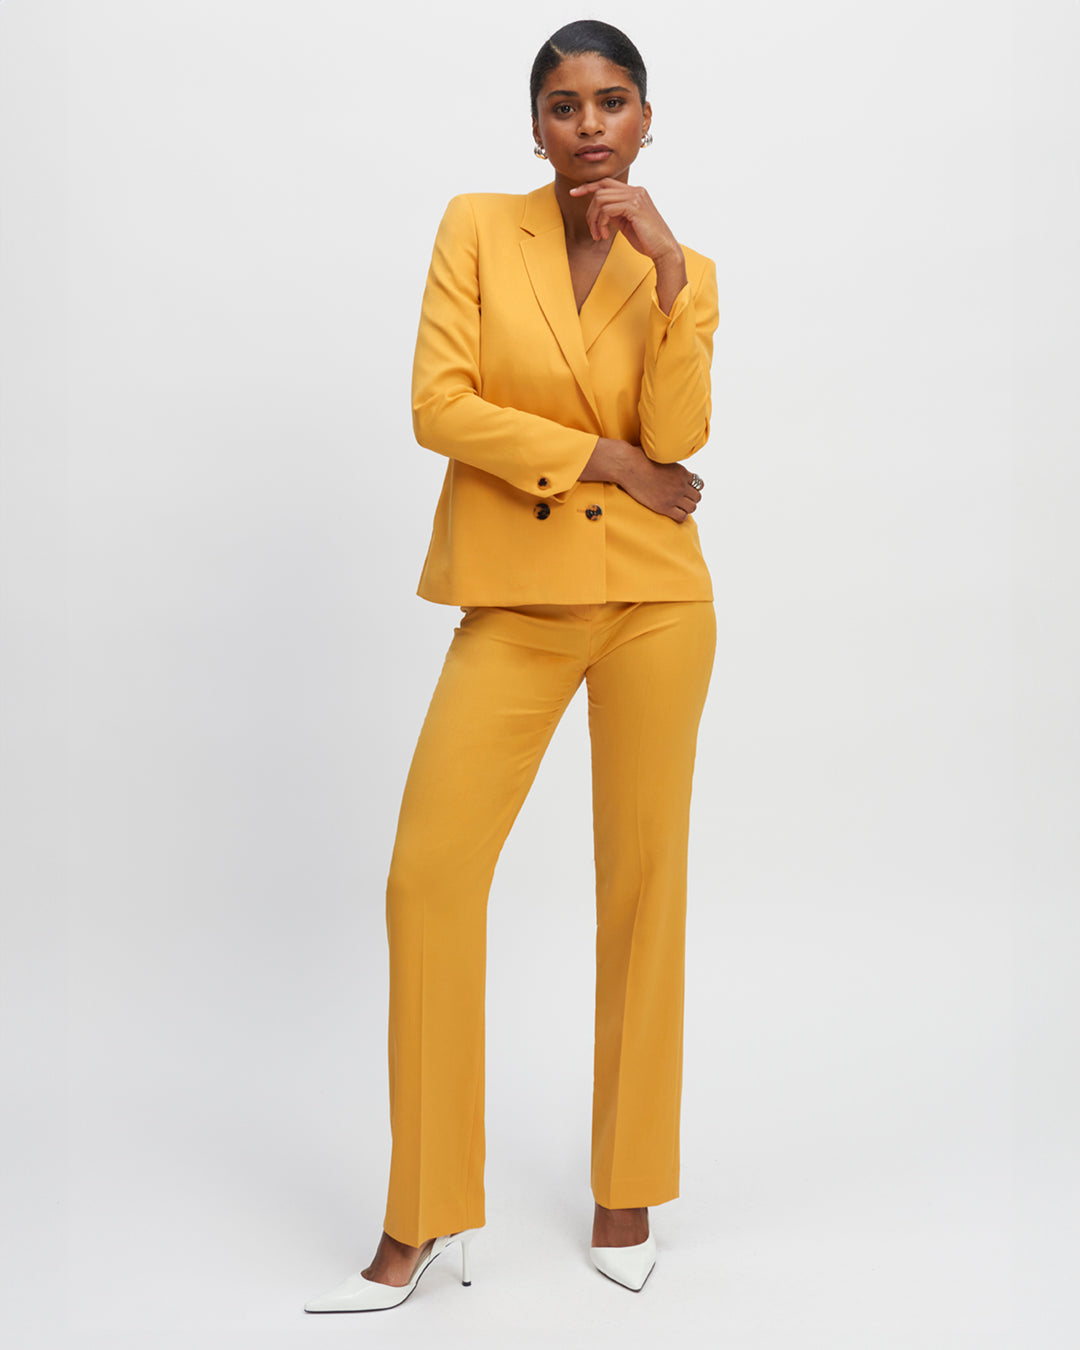 Pantalon-jaune-Coupe-droite-Taille-haute-Plis-devant-Fermeture-zip-avec-crochet-17H10-tailleurs-pour-femme-paris-